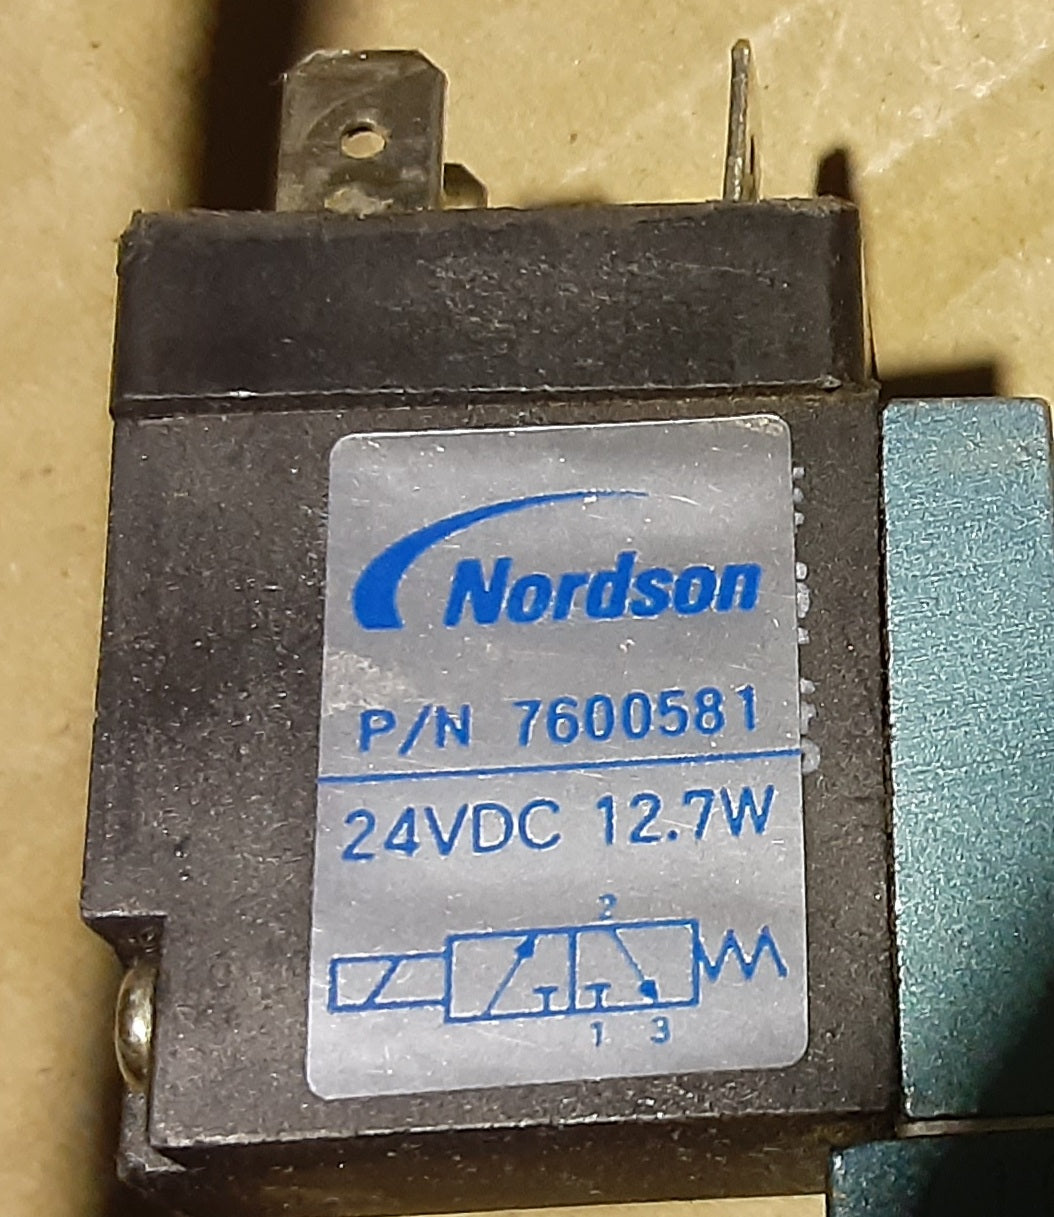 ノードソン製 ホットメルト用 アプリケータ クラシックブルー 2-LP-T パーツナンバー1055000A 24VDCプラグ付き nordson1-2lpt1055000-1266